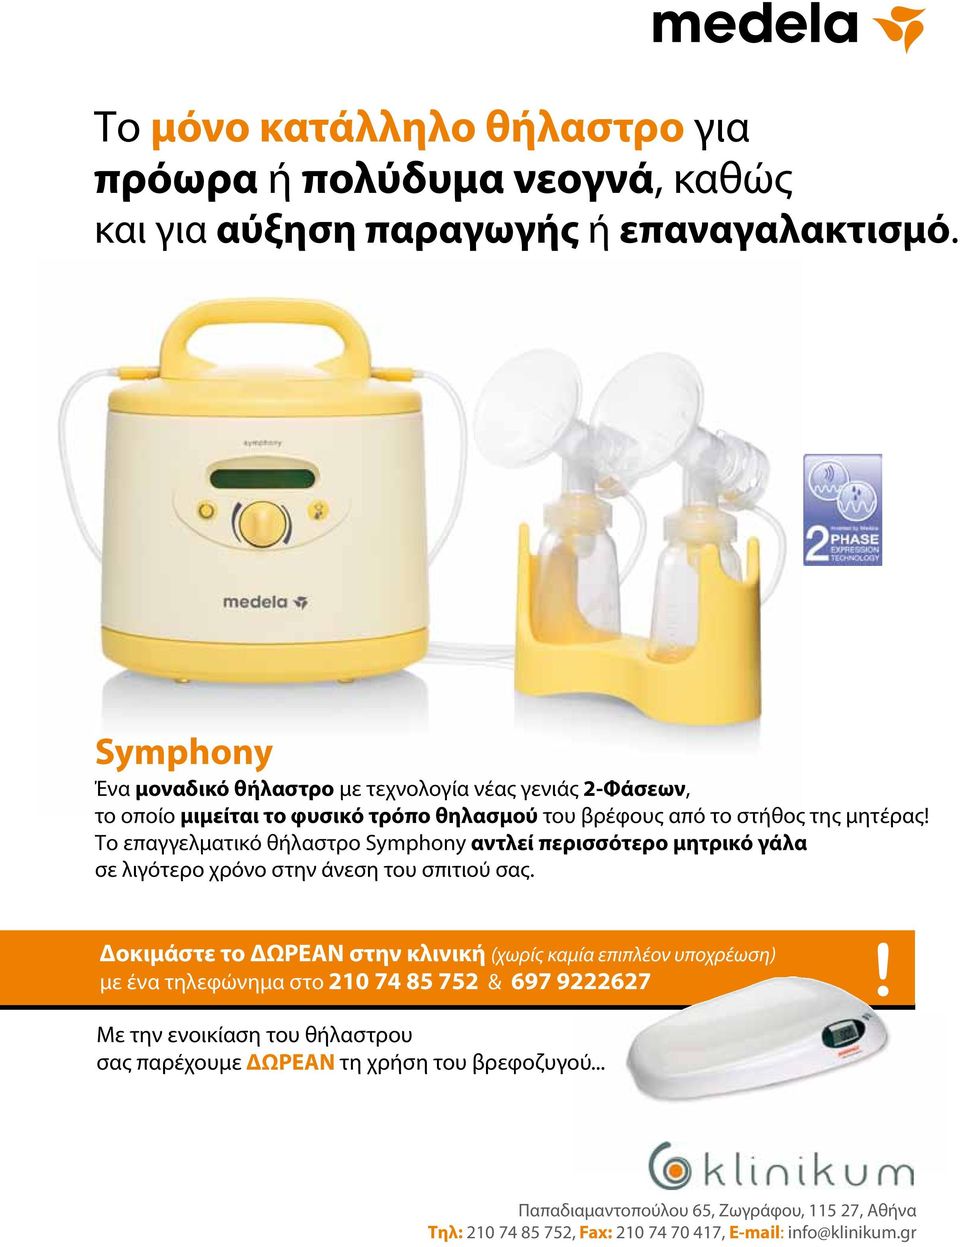 Το επαγγελματικό θήλαστρο Symphony αντλεί περισσότερο μητρικό γάλα σε λιγότερο χρόνο στην άνεση του σπιτιού σας.